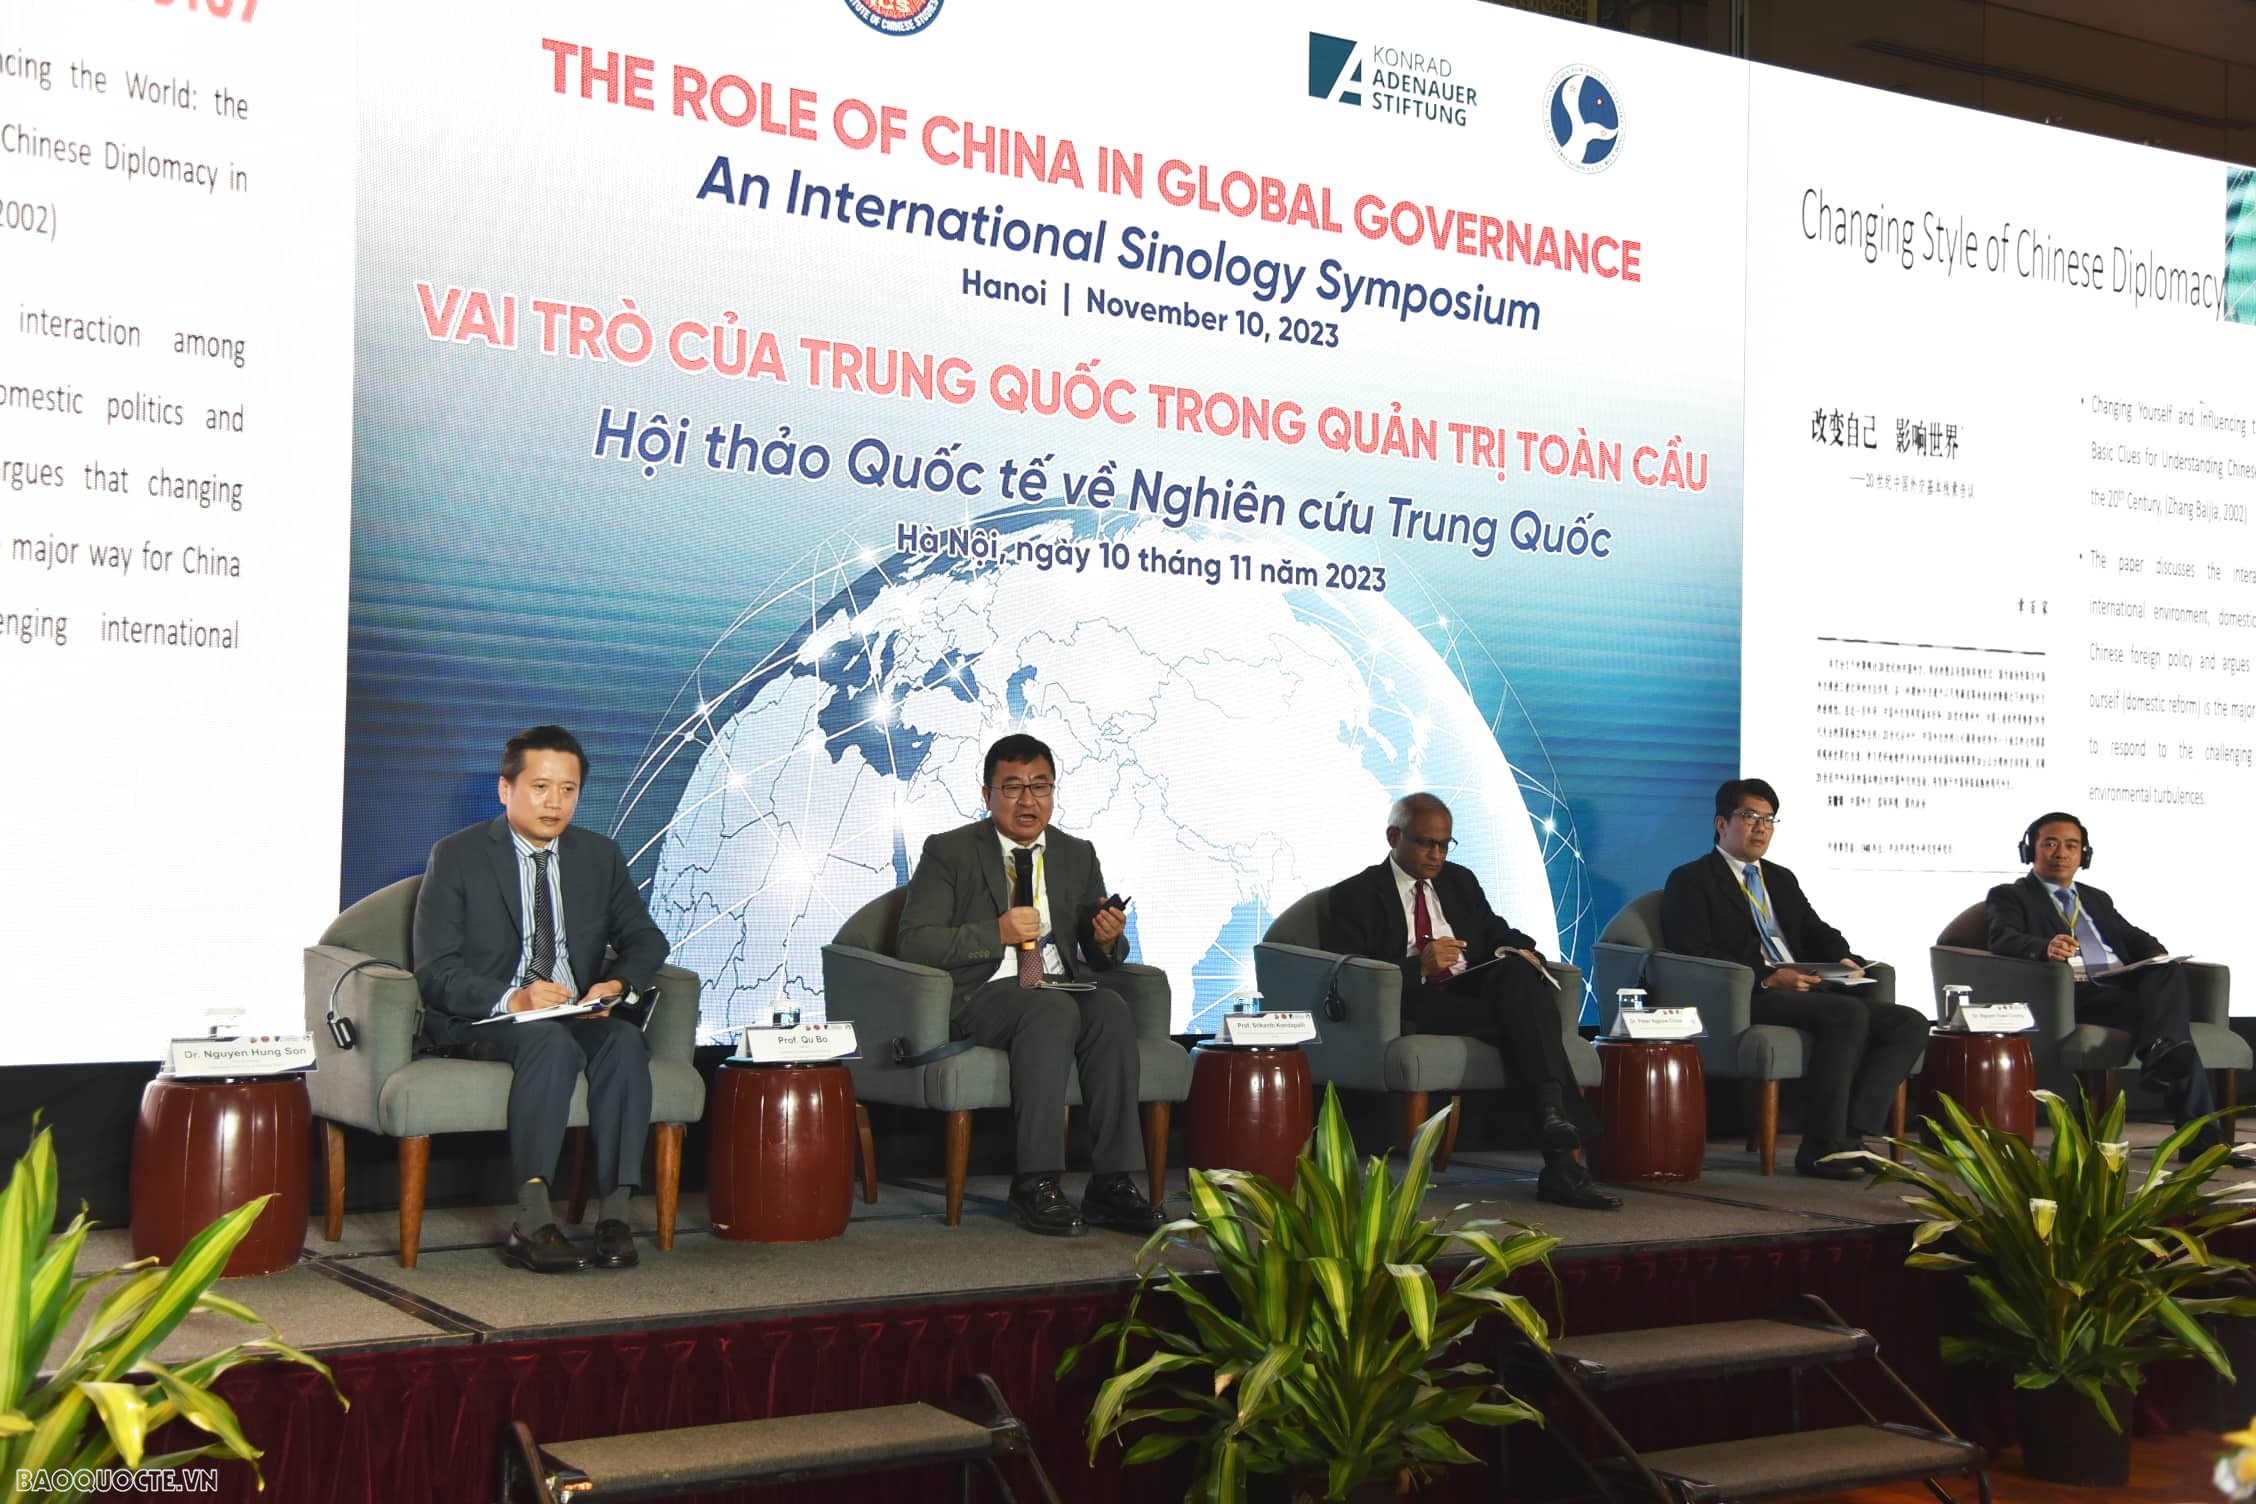 Phó Giám đốc Học viện Ngoại giao, TS. Nguyễn Hùng Sơn (ngoài cùng bên trái) điều hành phiên thảo luận về “Triển vọng của Trung Quốc trong quản trị toàn cầu”. (Ảnh: Đức Khải)